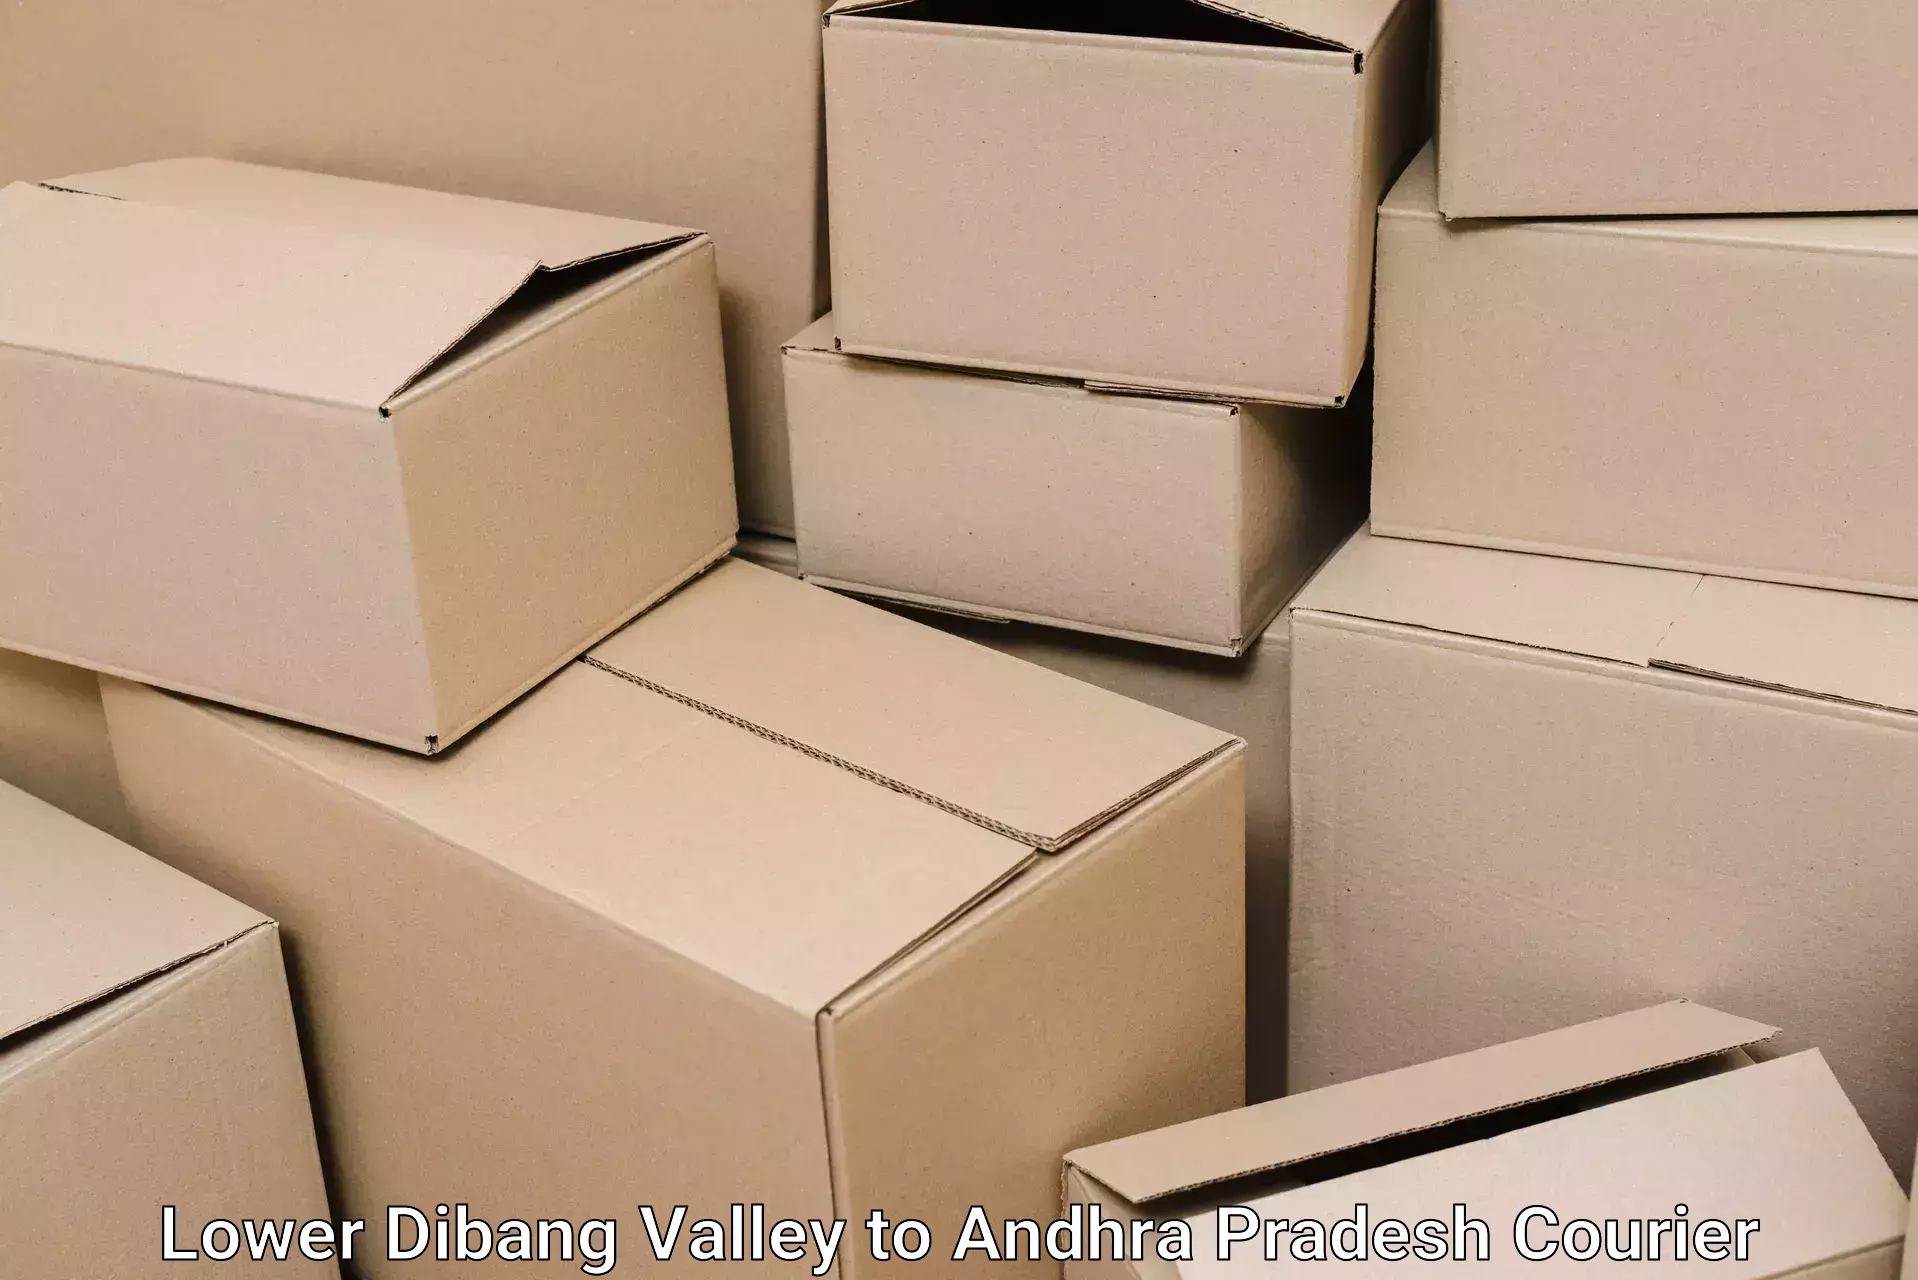 Furniture moving experts Lower Dibang Valley to Pileru